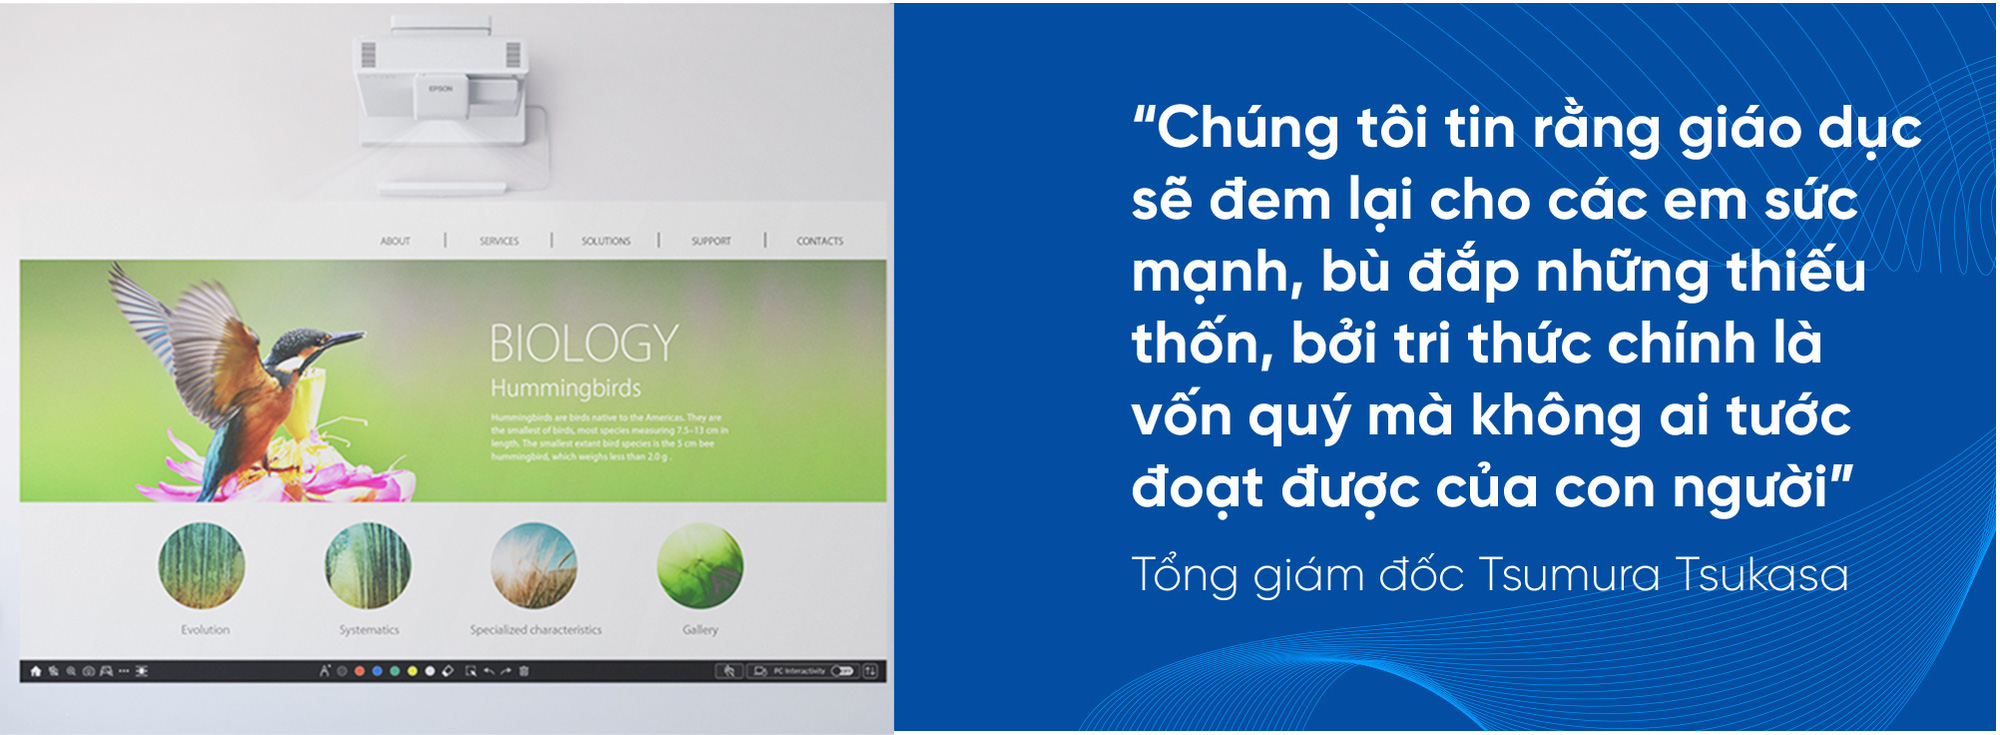 CEO Epson Việt Nam: “Chúng tôi đồng hành cùng doanh nghiệp Việt Nam hướng đến phát triển bền vững” - Ảnh 2.